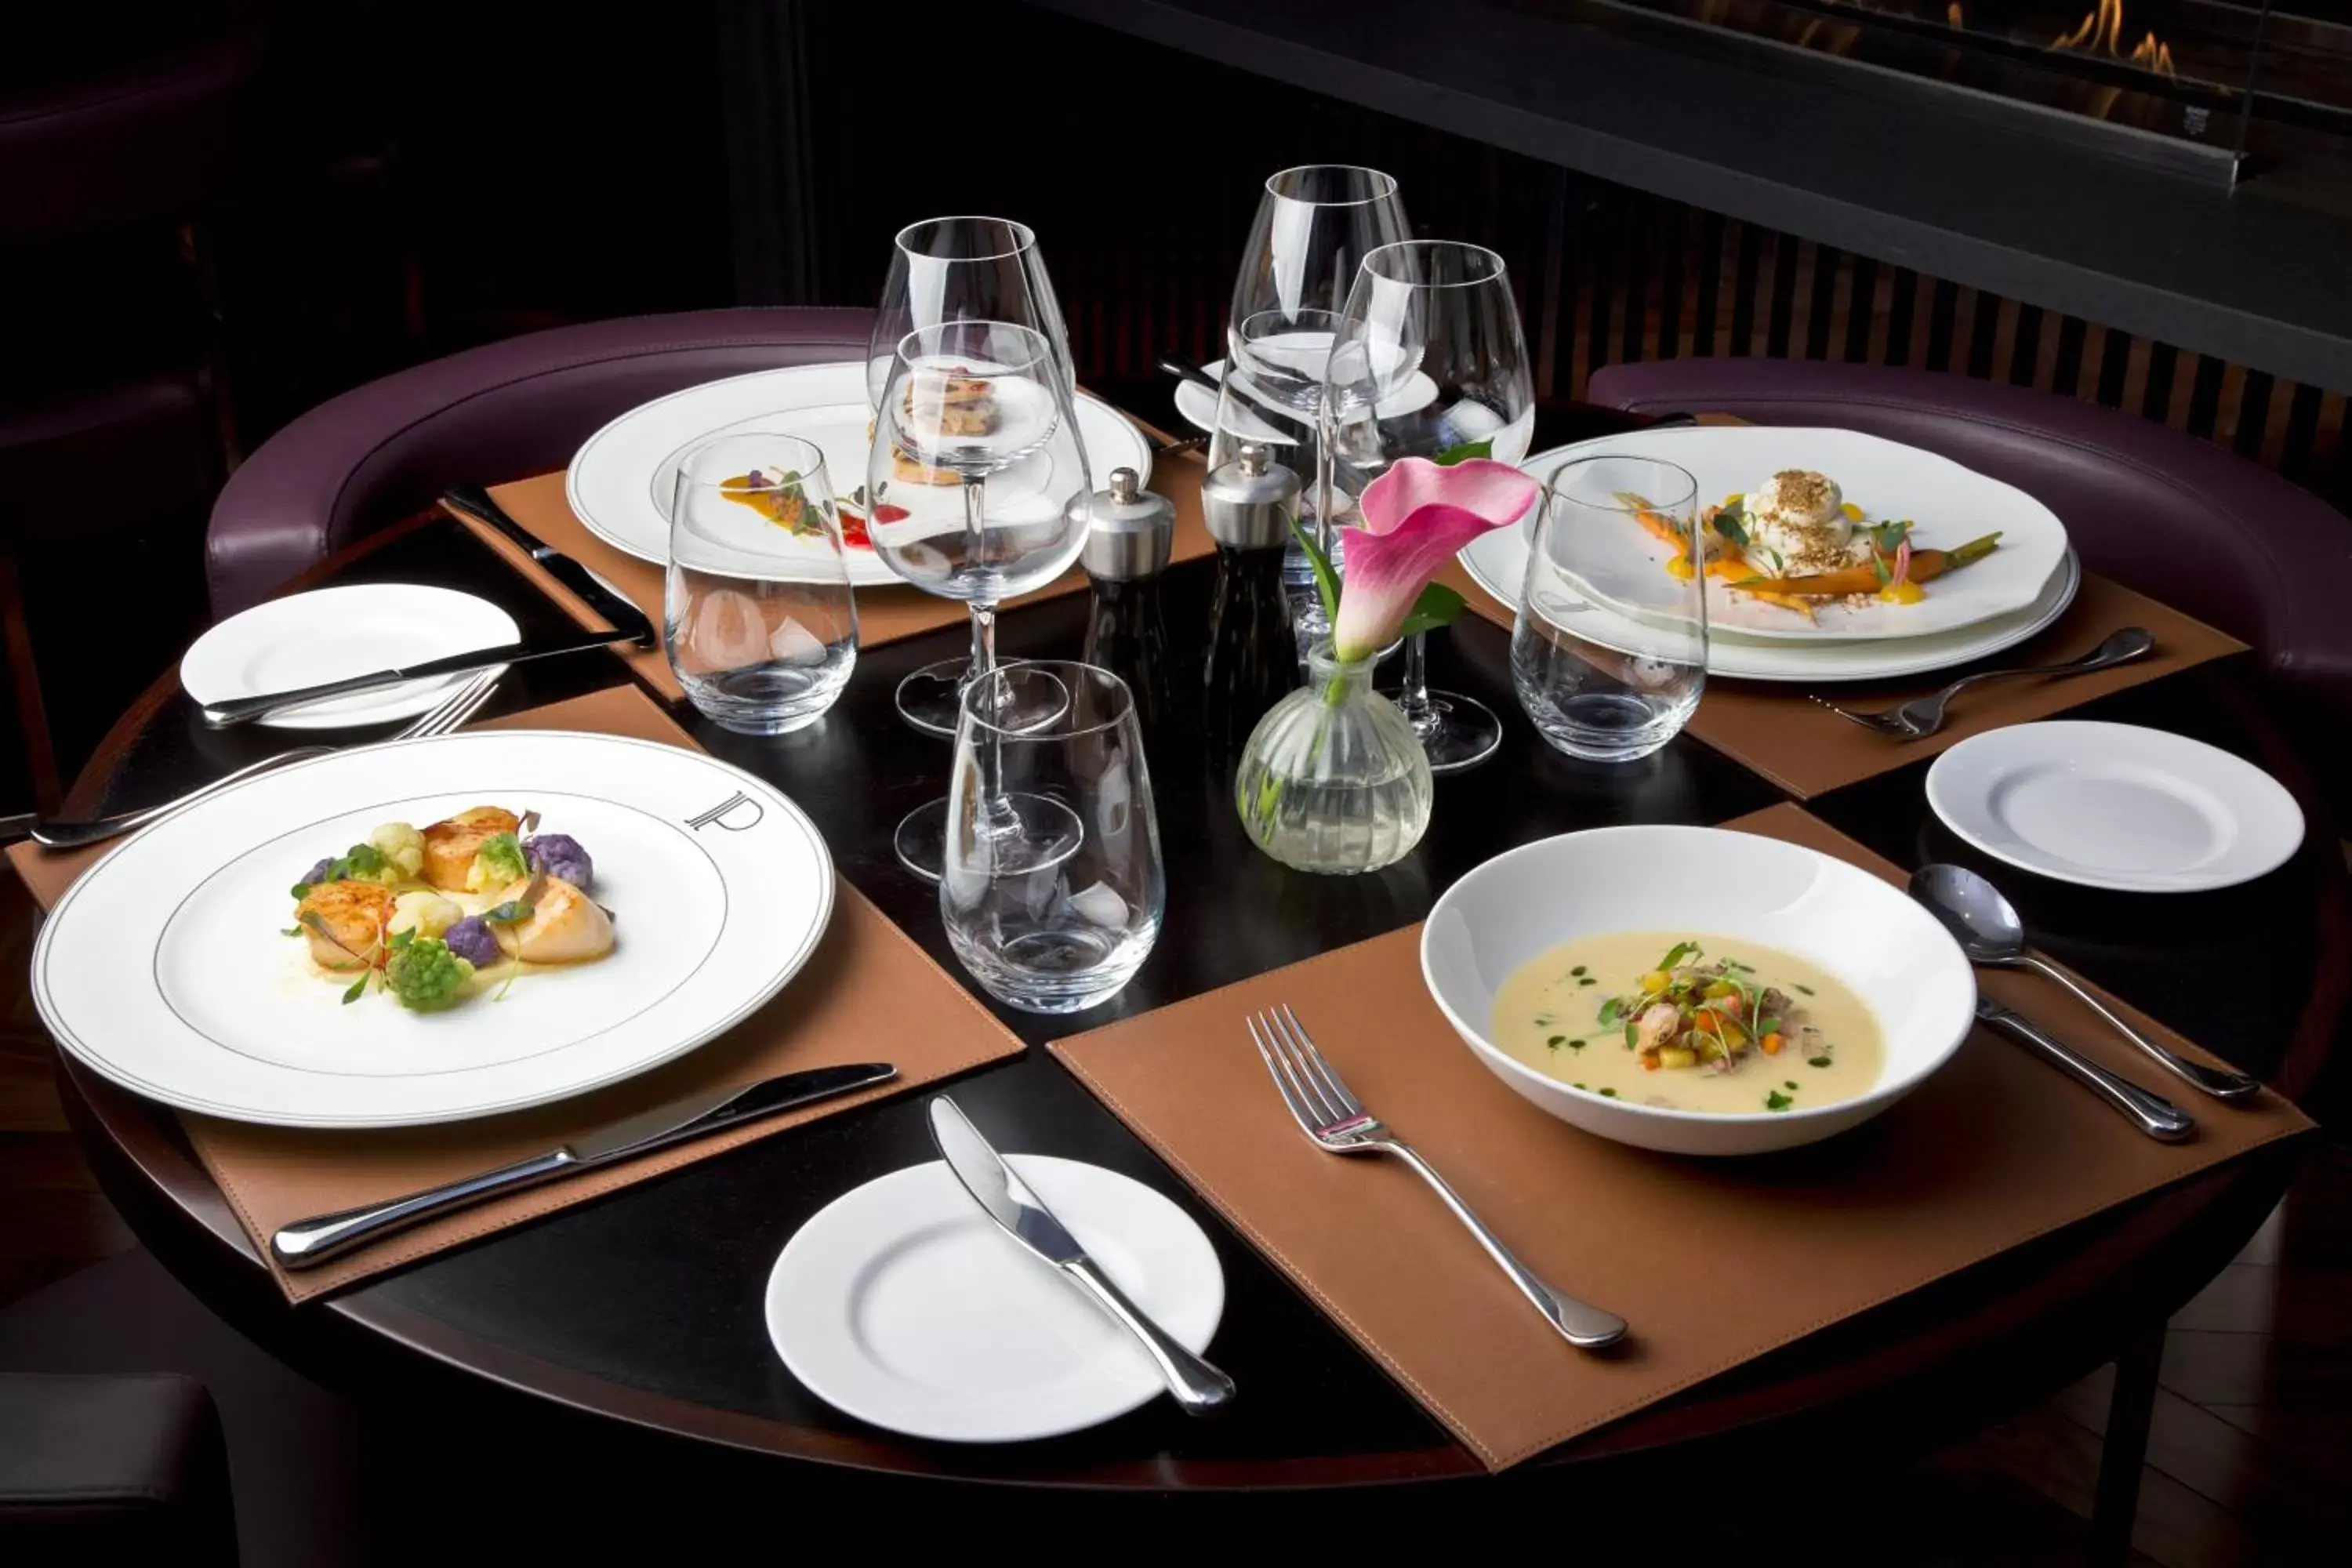 Restaurant/places to eat, Lunch and Dinner in Hyatt Regency London Albert Embankment